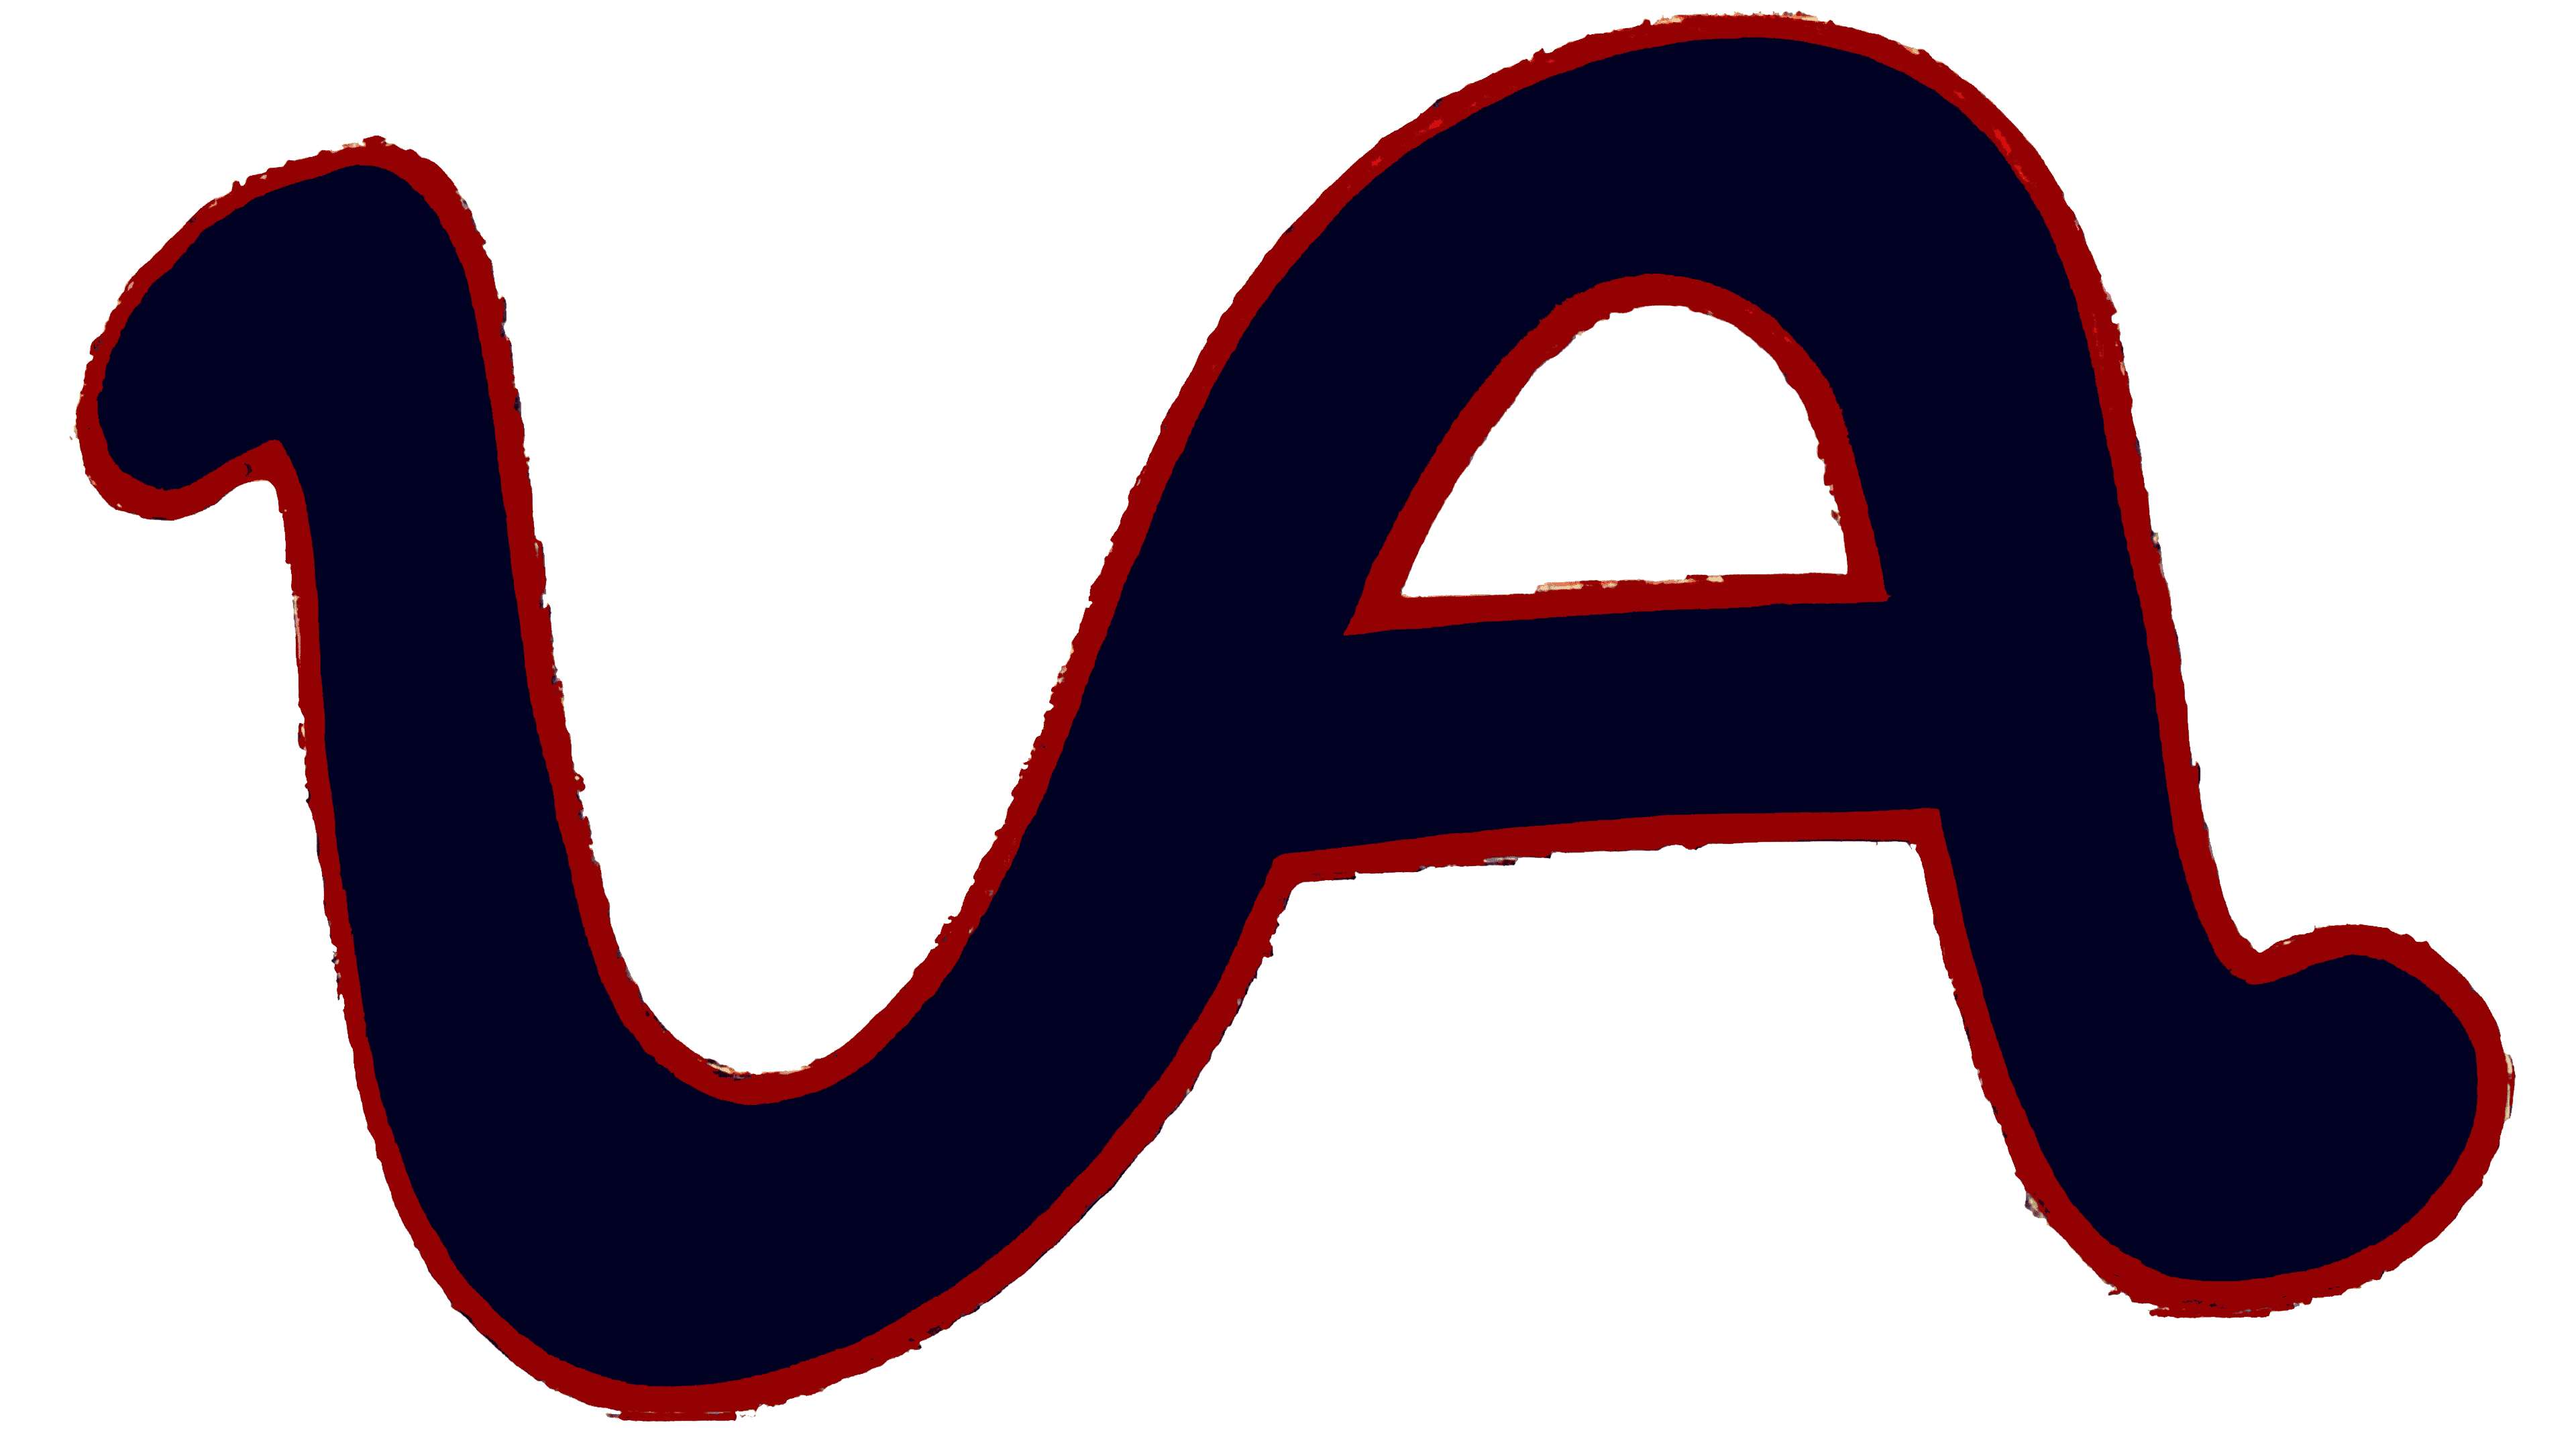 university of arizona logo